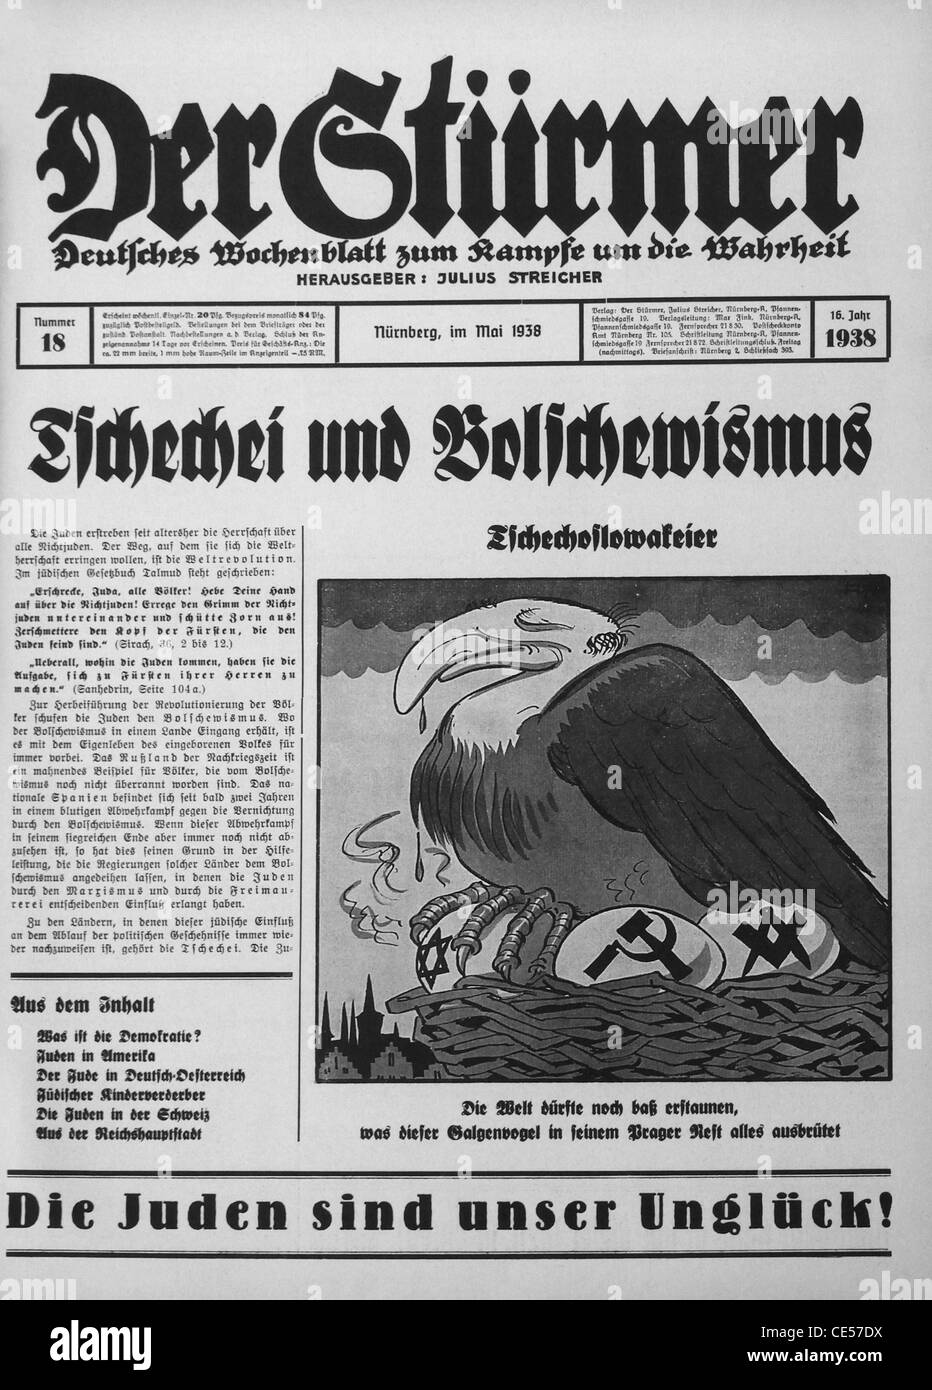 Pagina anteriore di Der Sturmer settimanale tedesco formato tabloid Nazi giornale pubblicato dal 1923 fino alla fine della II Guerra Mondiale nel 1945 Foto Stock